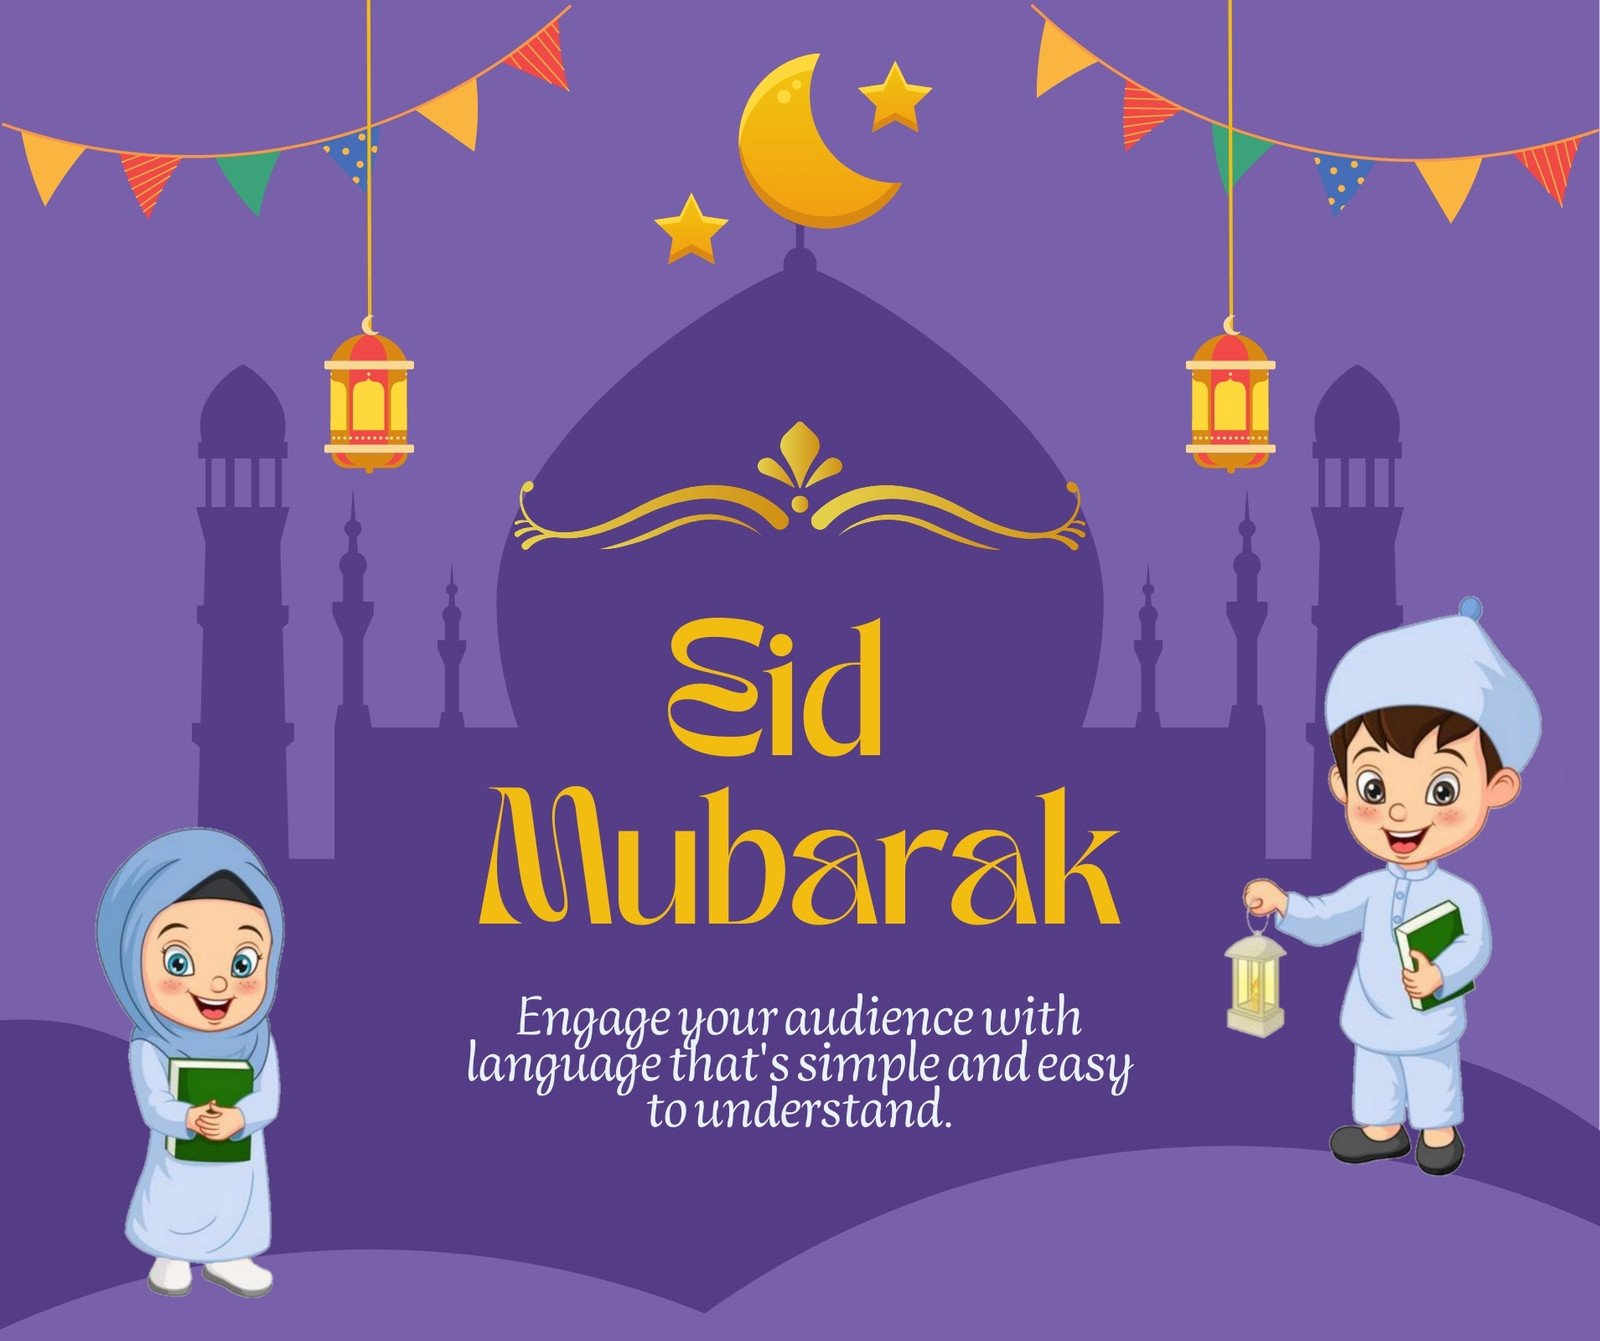 animated eid card for facebook